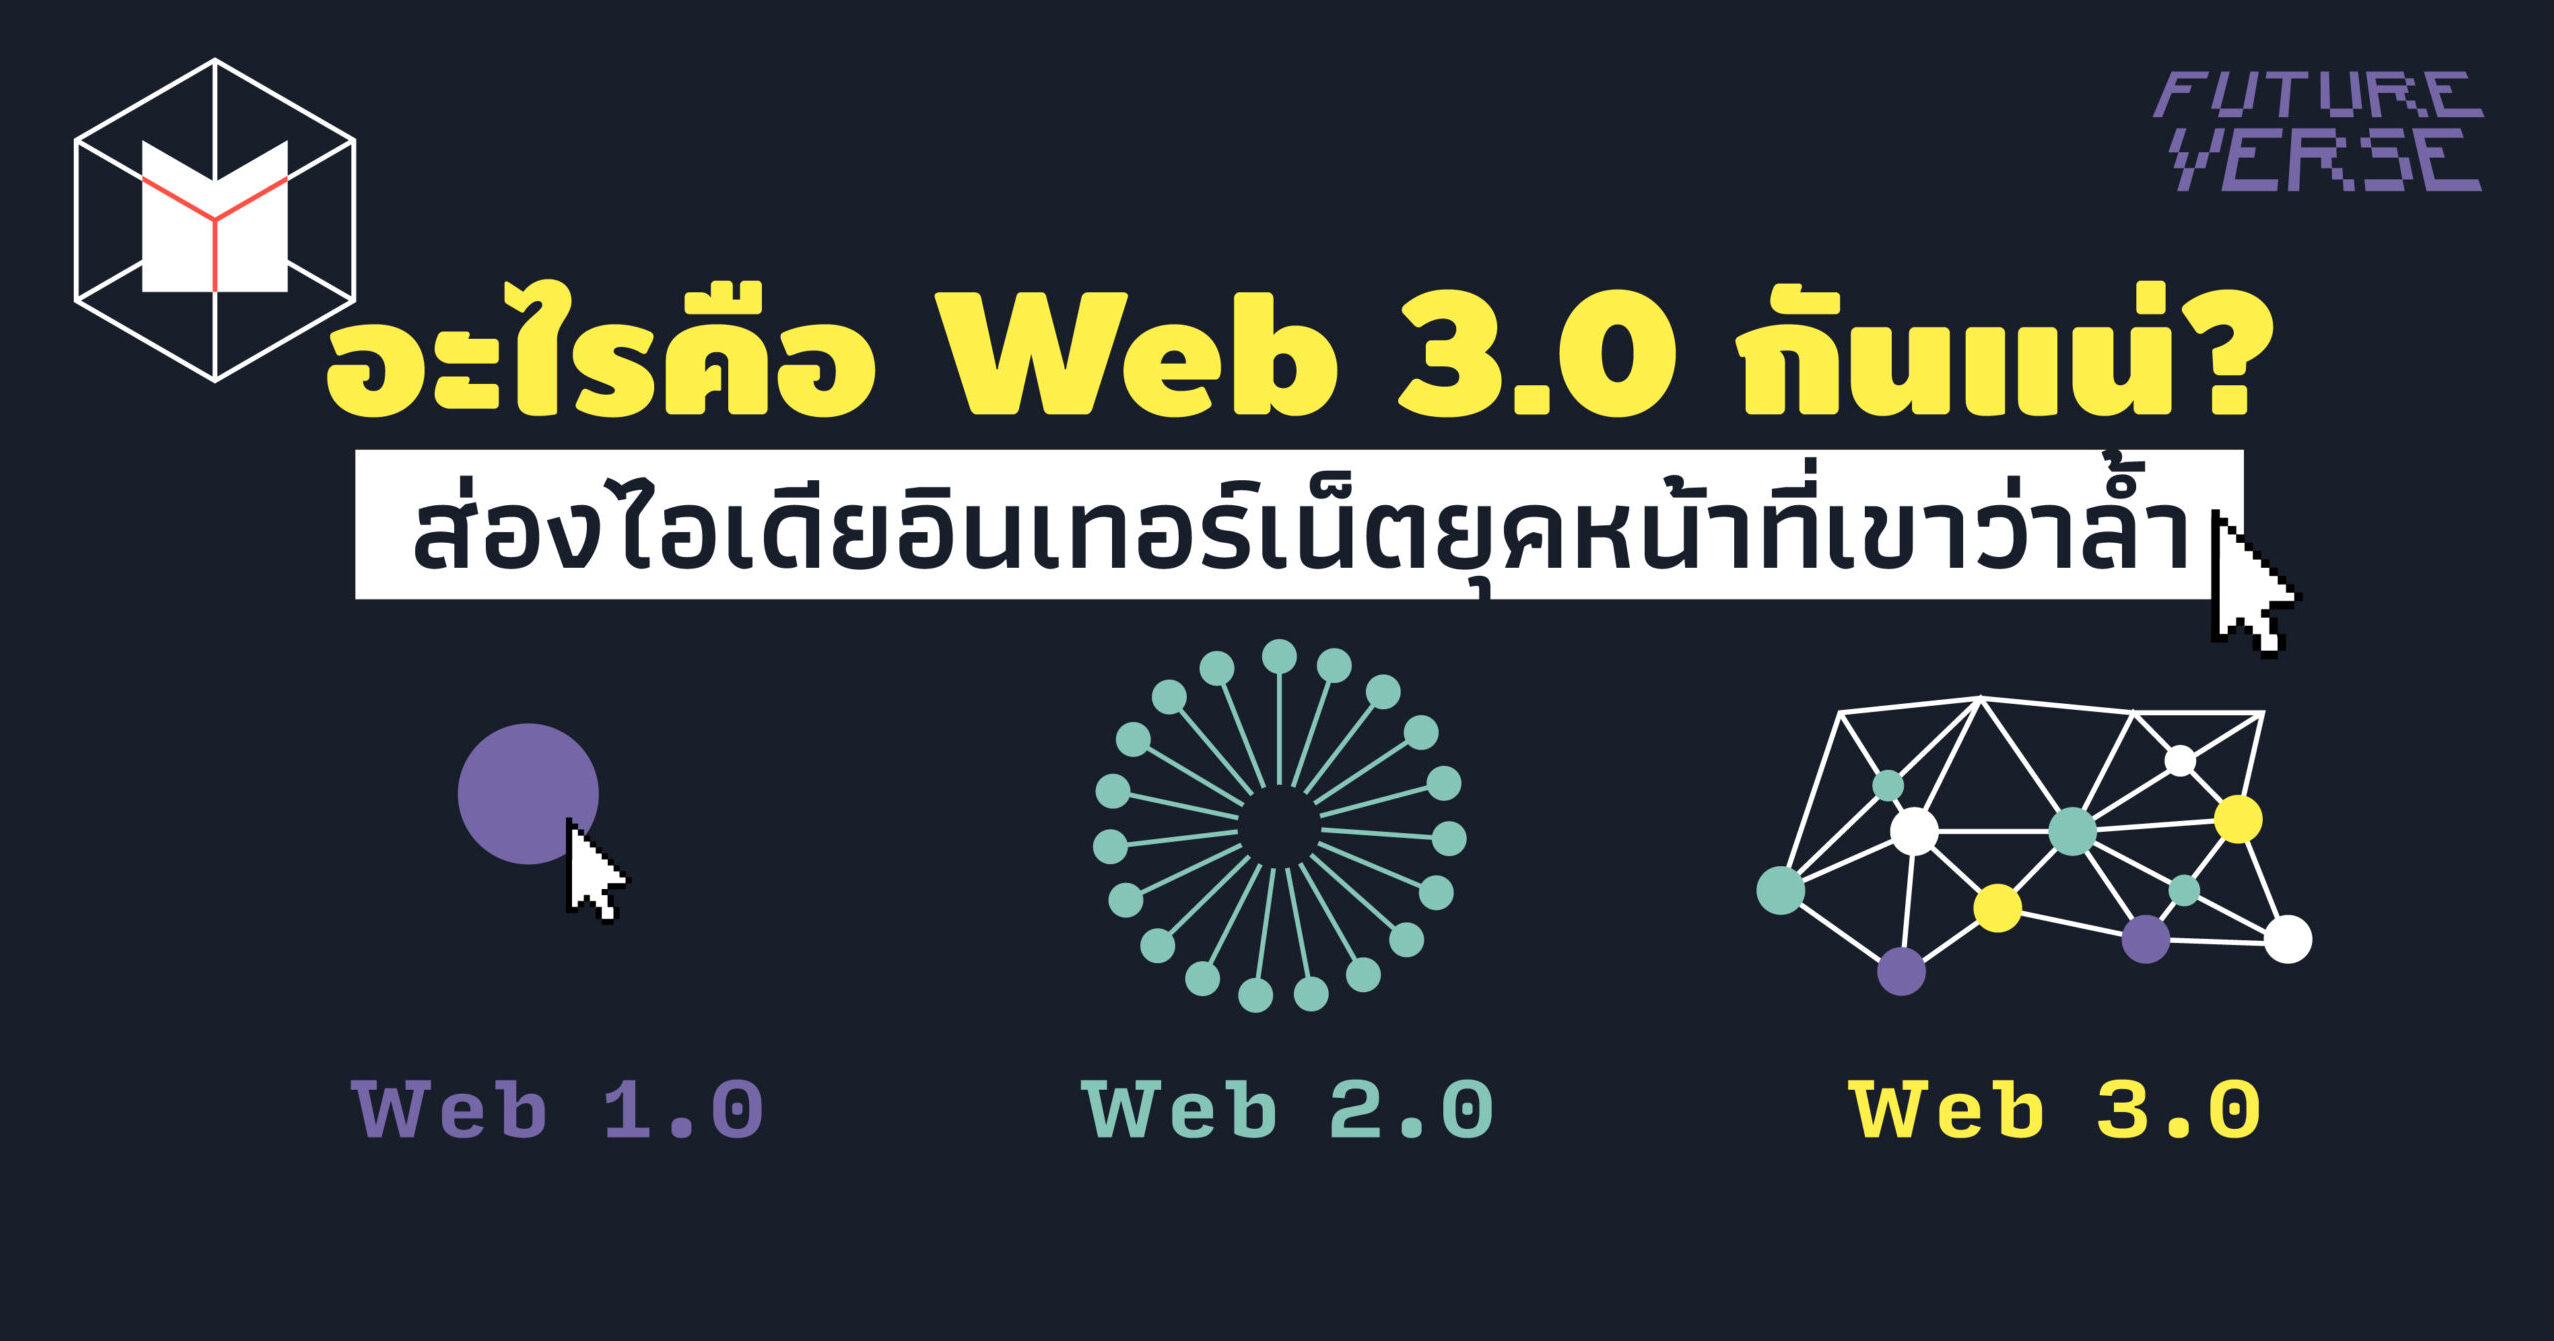 อะไรคือ Web 3.0 กันแน่? ส่องไอเดียอินเทอร์เน็ตยุคหน้าที่เขาว่าล้ำ